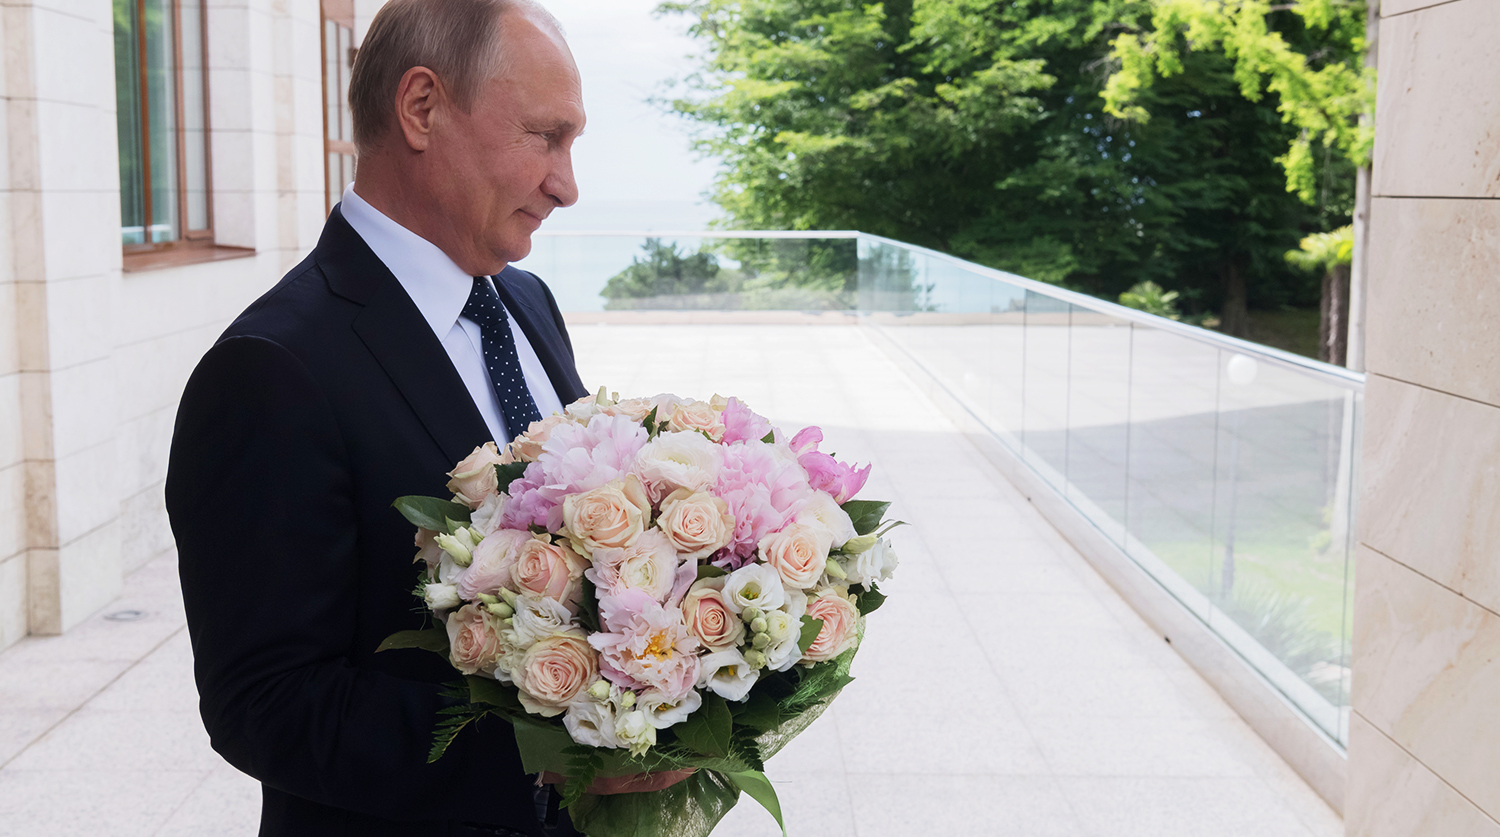 Скачать Поздравление Путина Ольгу